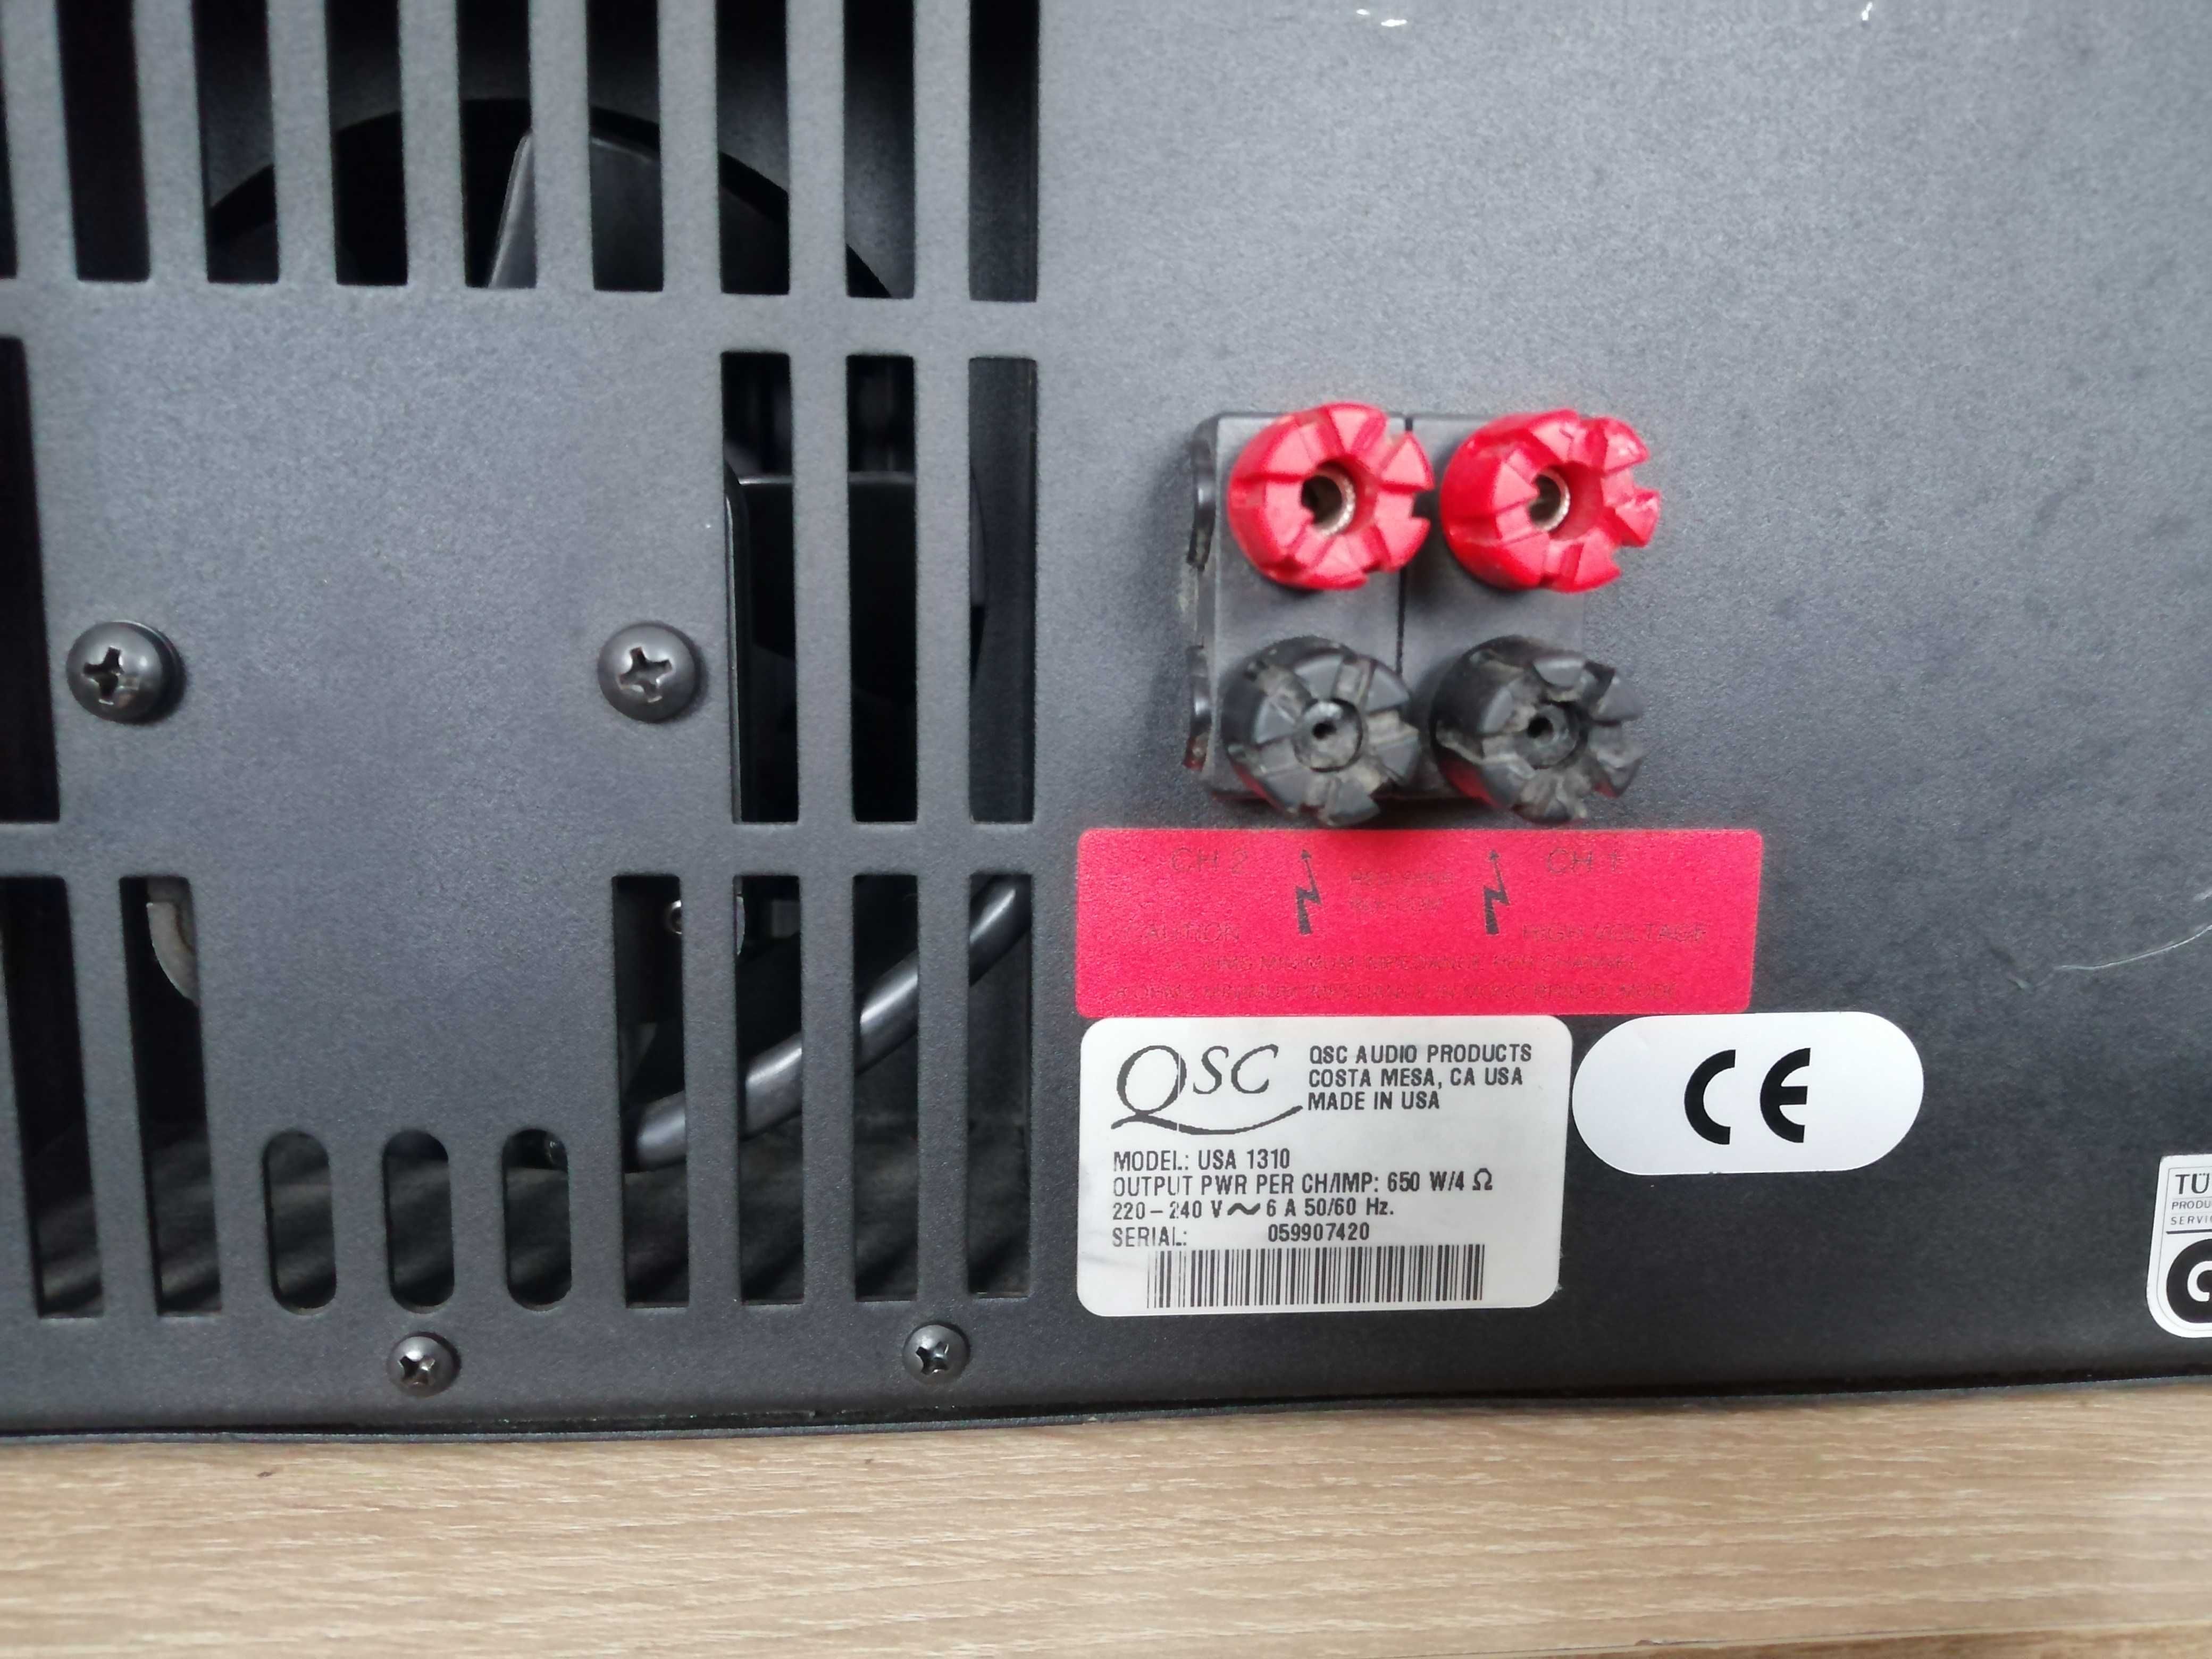 Qsc usa 1310 końcówka mocy qsc usa 900 wzmacniacz qsc 1400